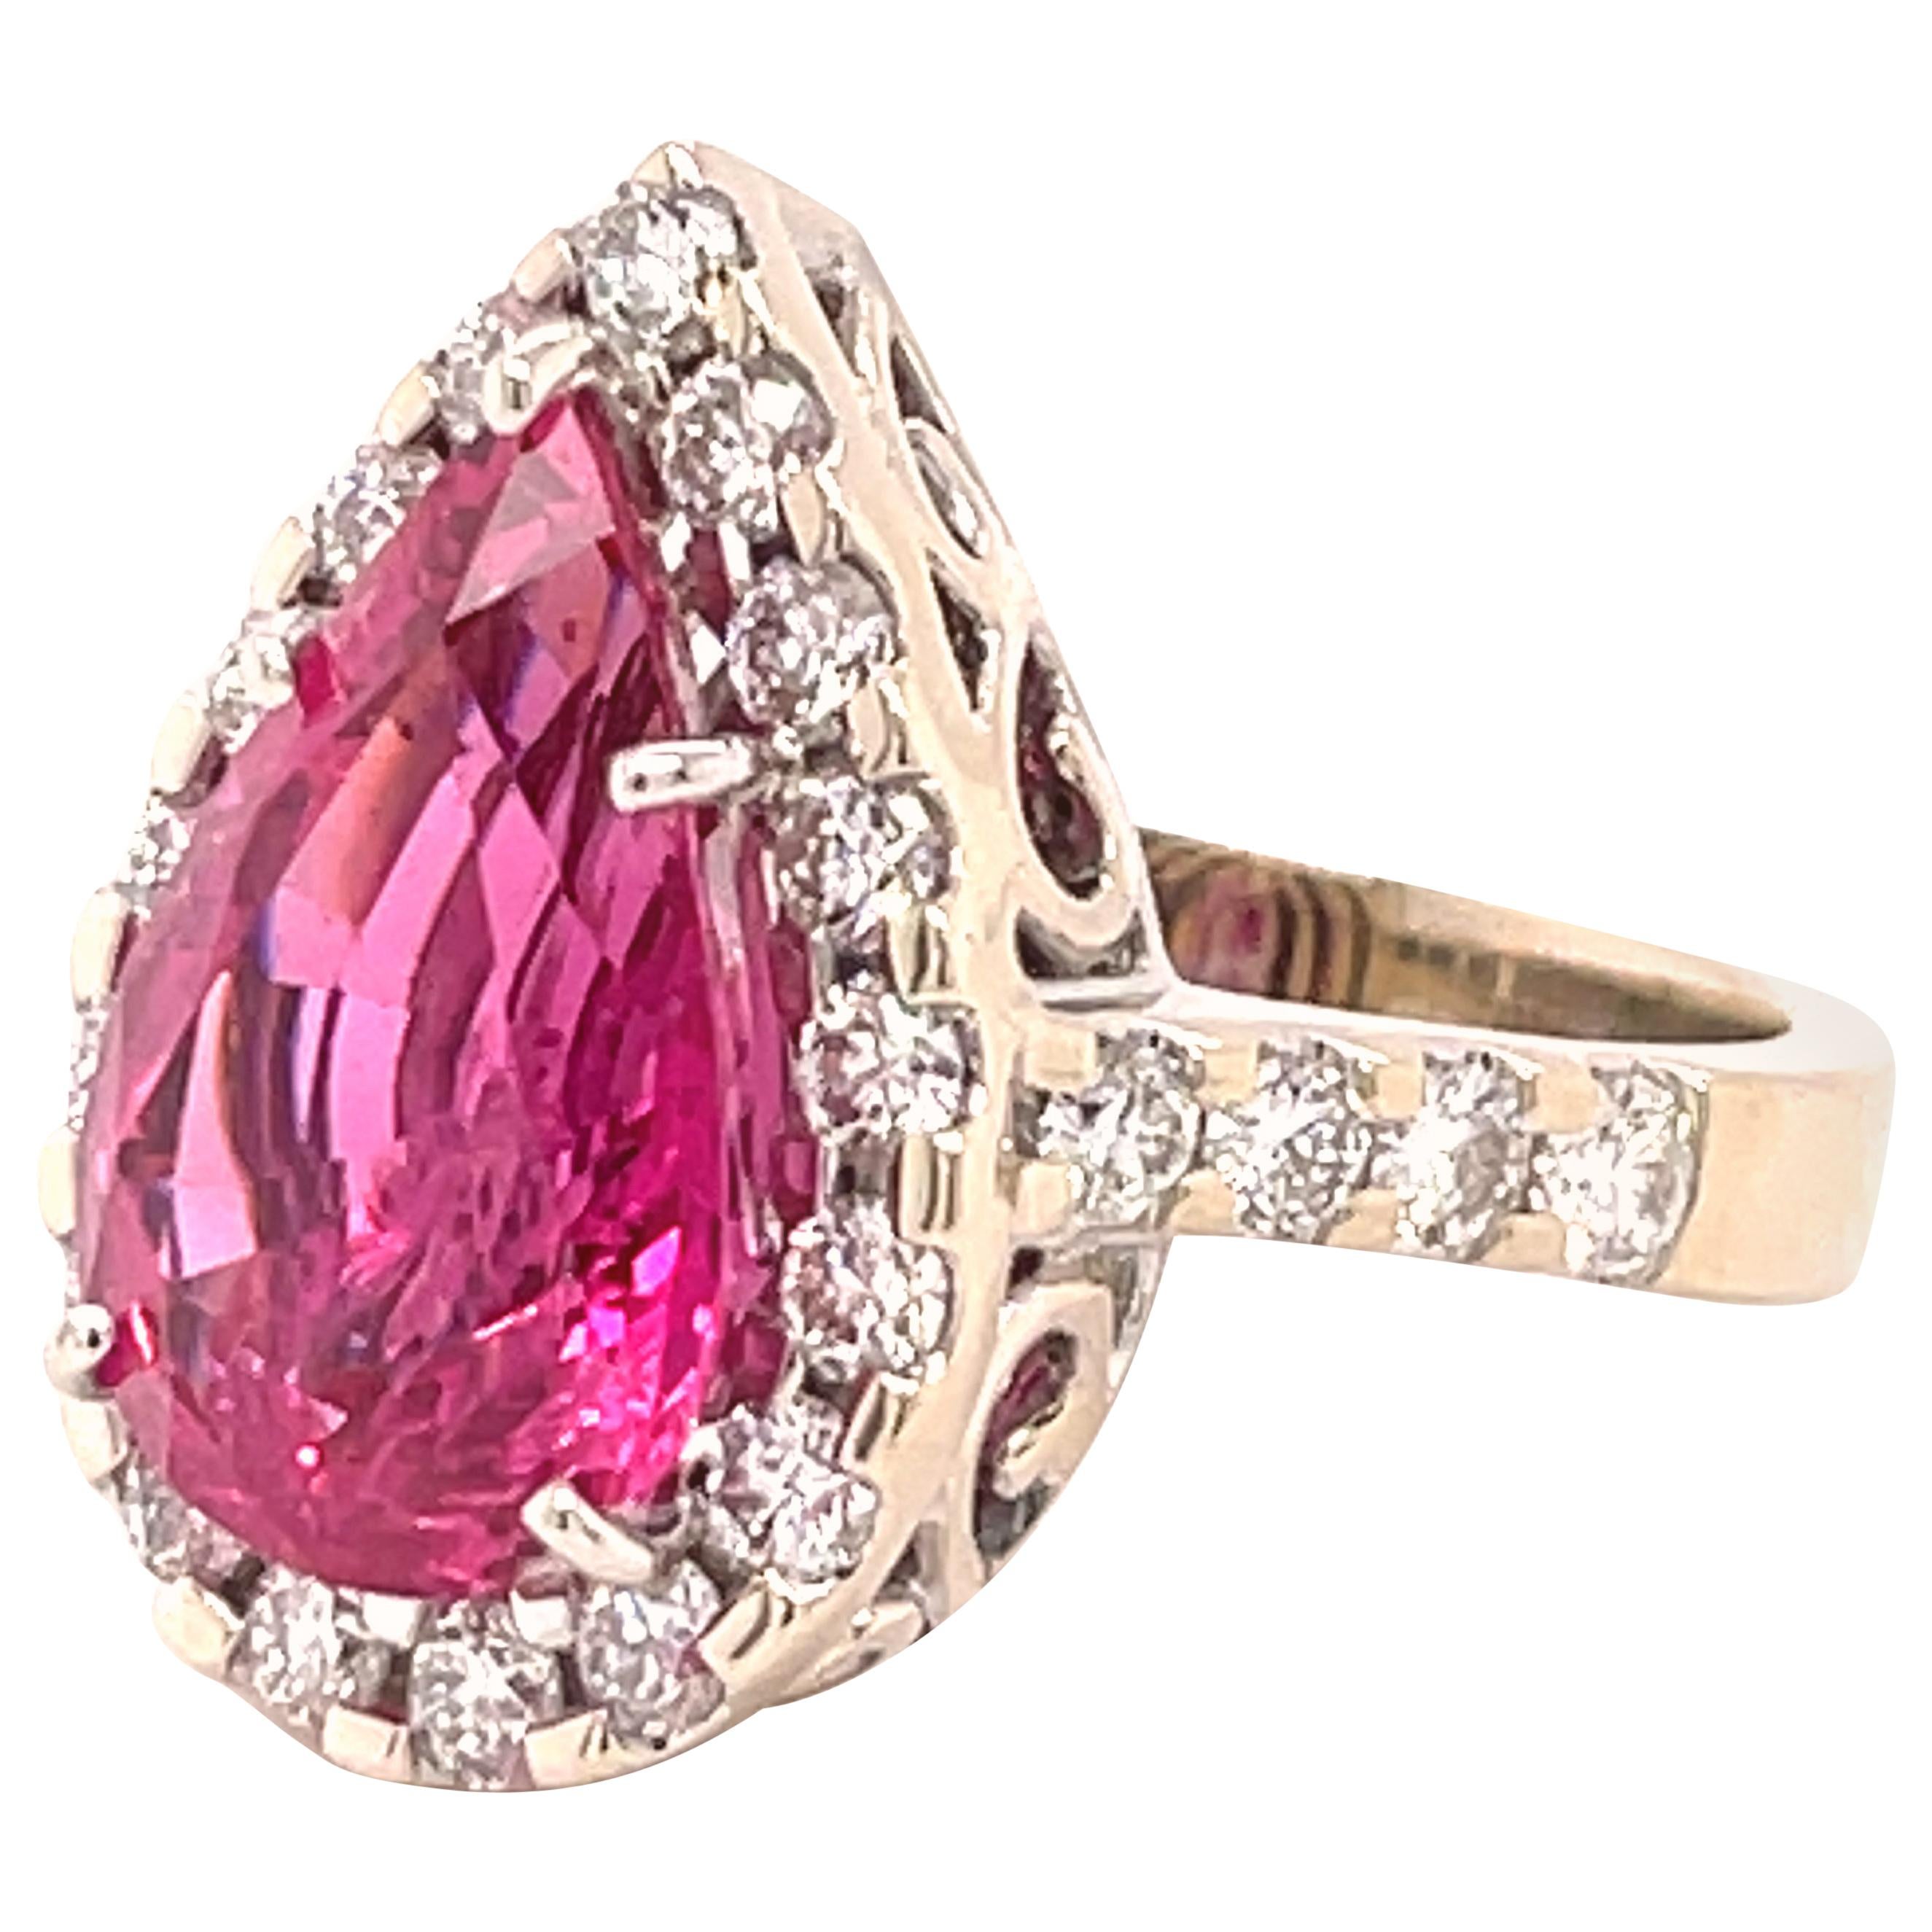 5.95 Carat Pink Spinel Diamond Gold Ring